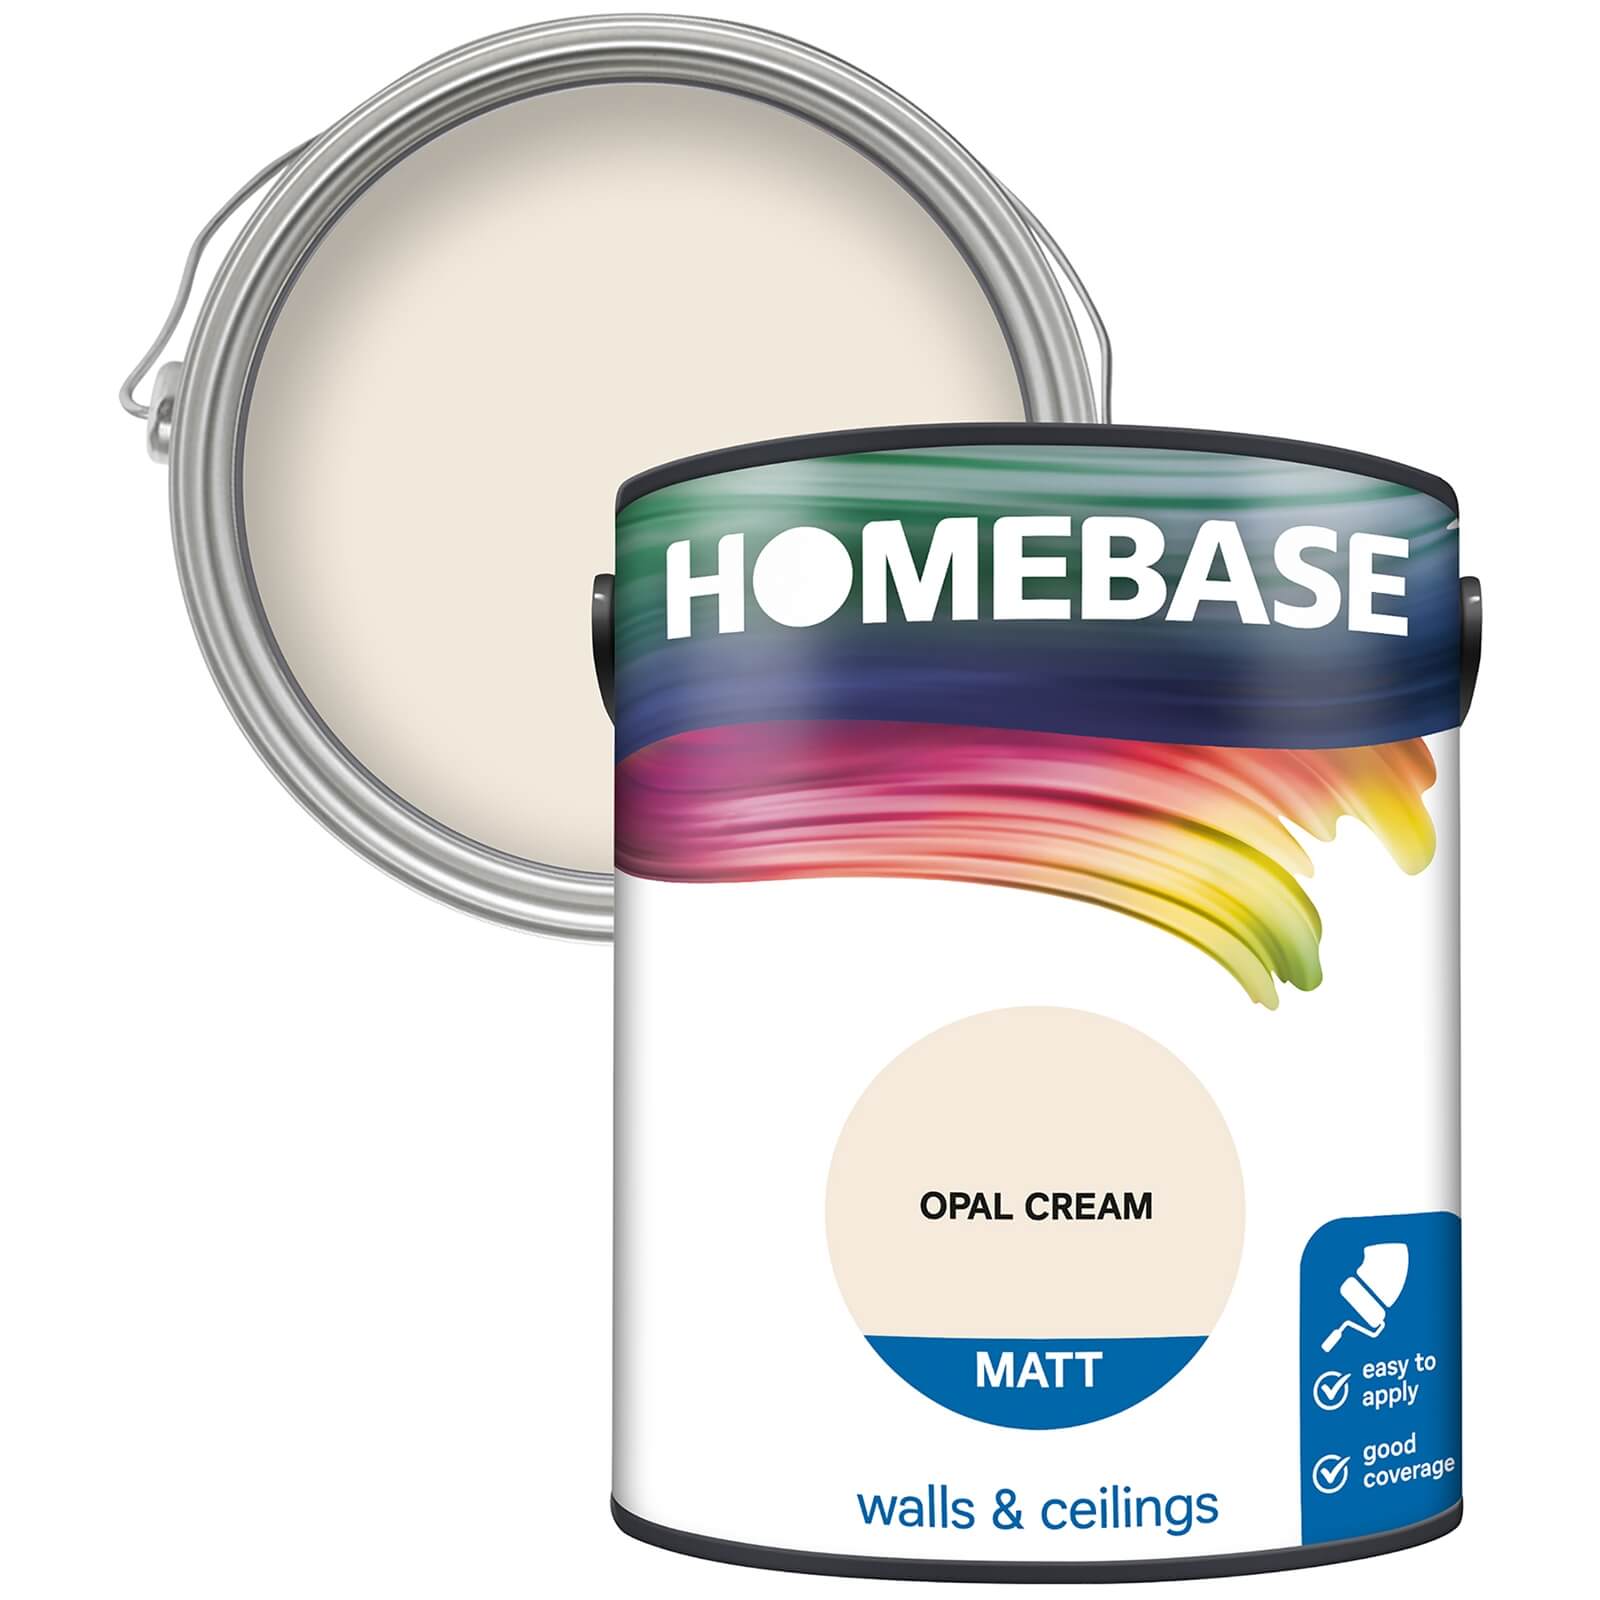 Homebase Matt Emulsion Paint Opal Cream - 5L